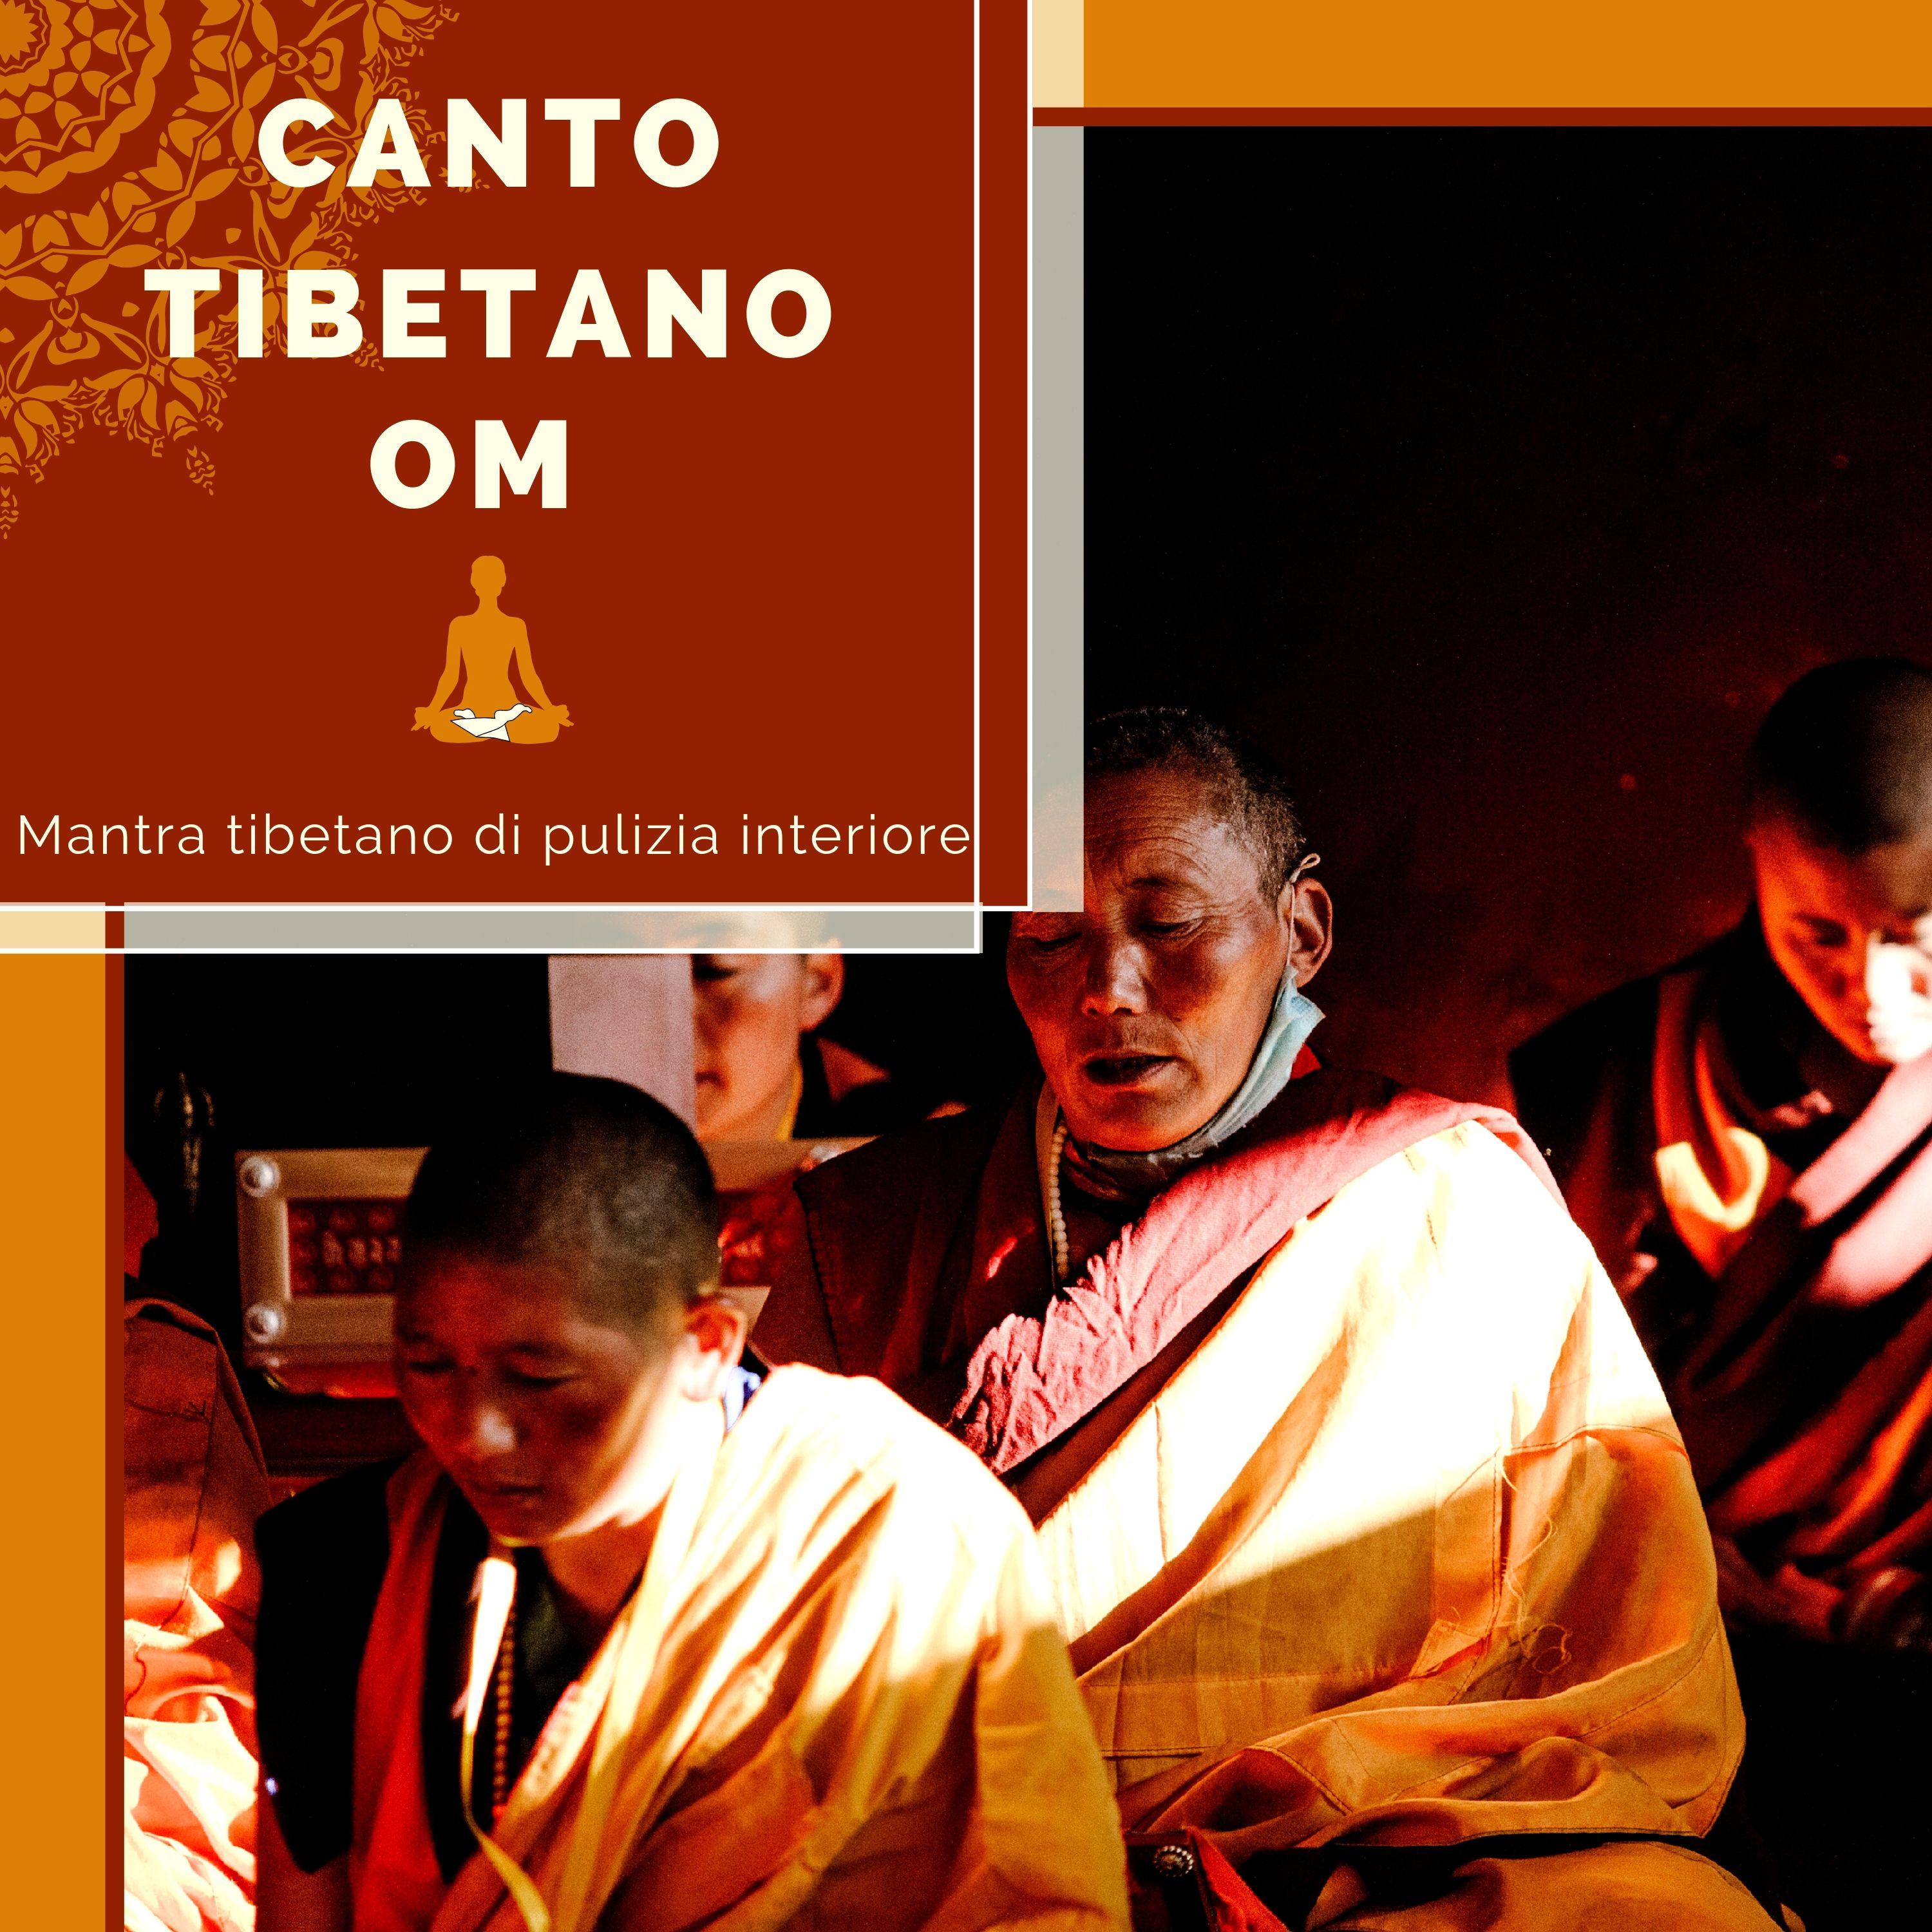 Canto Tibetano OM - Mantra tibetano di pulizia interiore